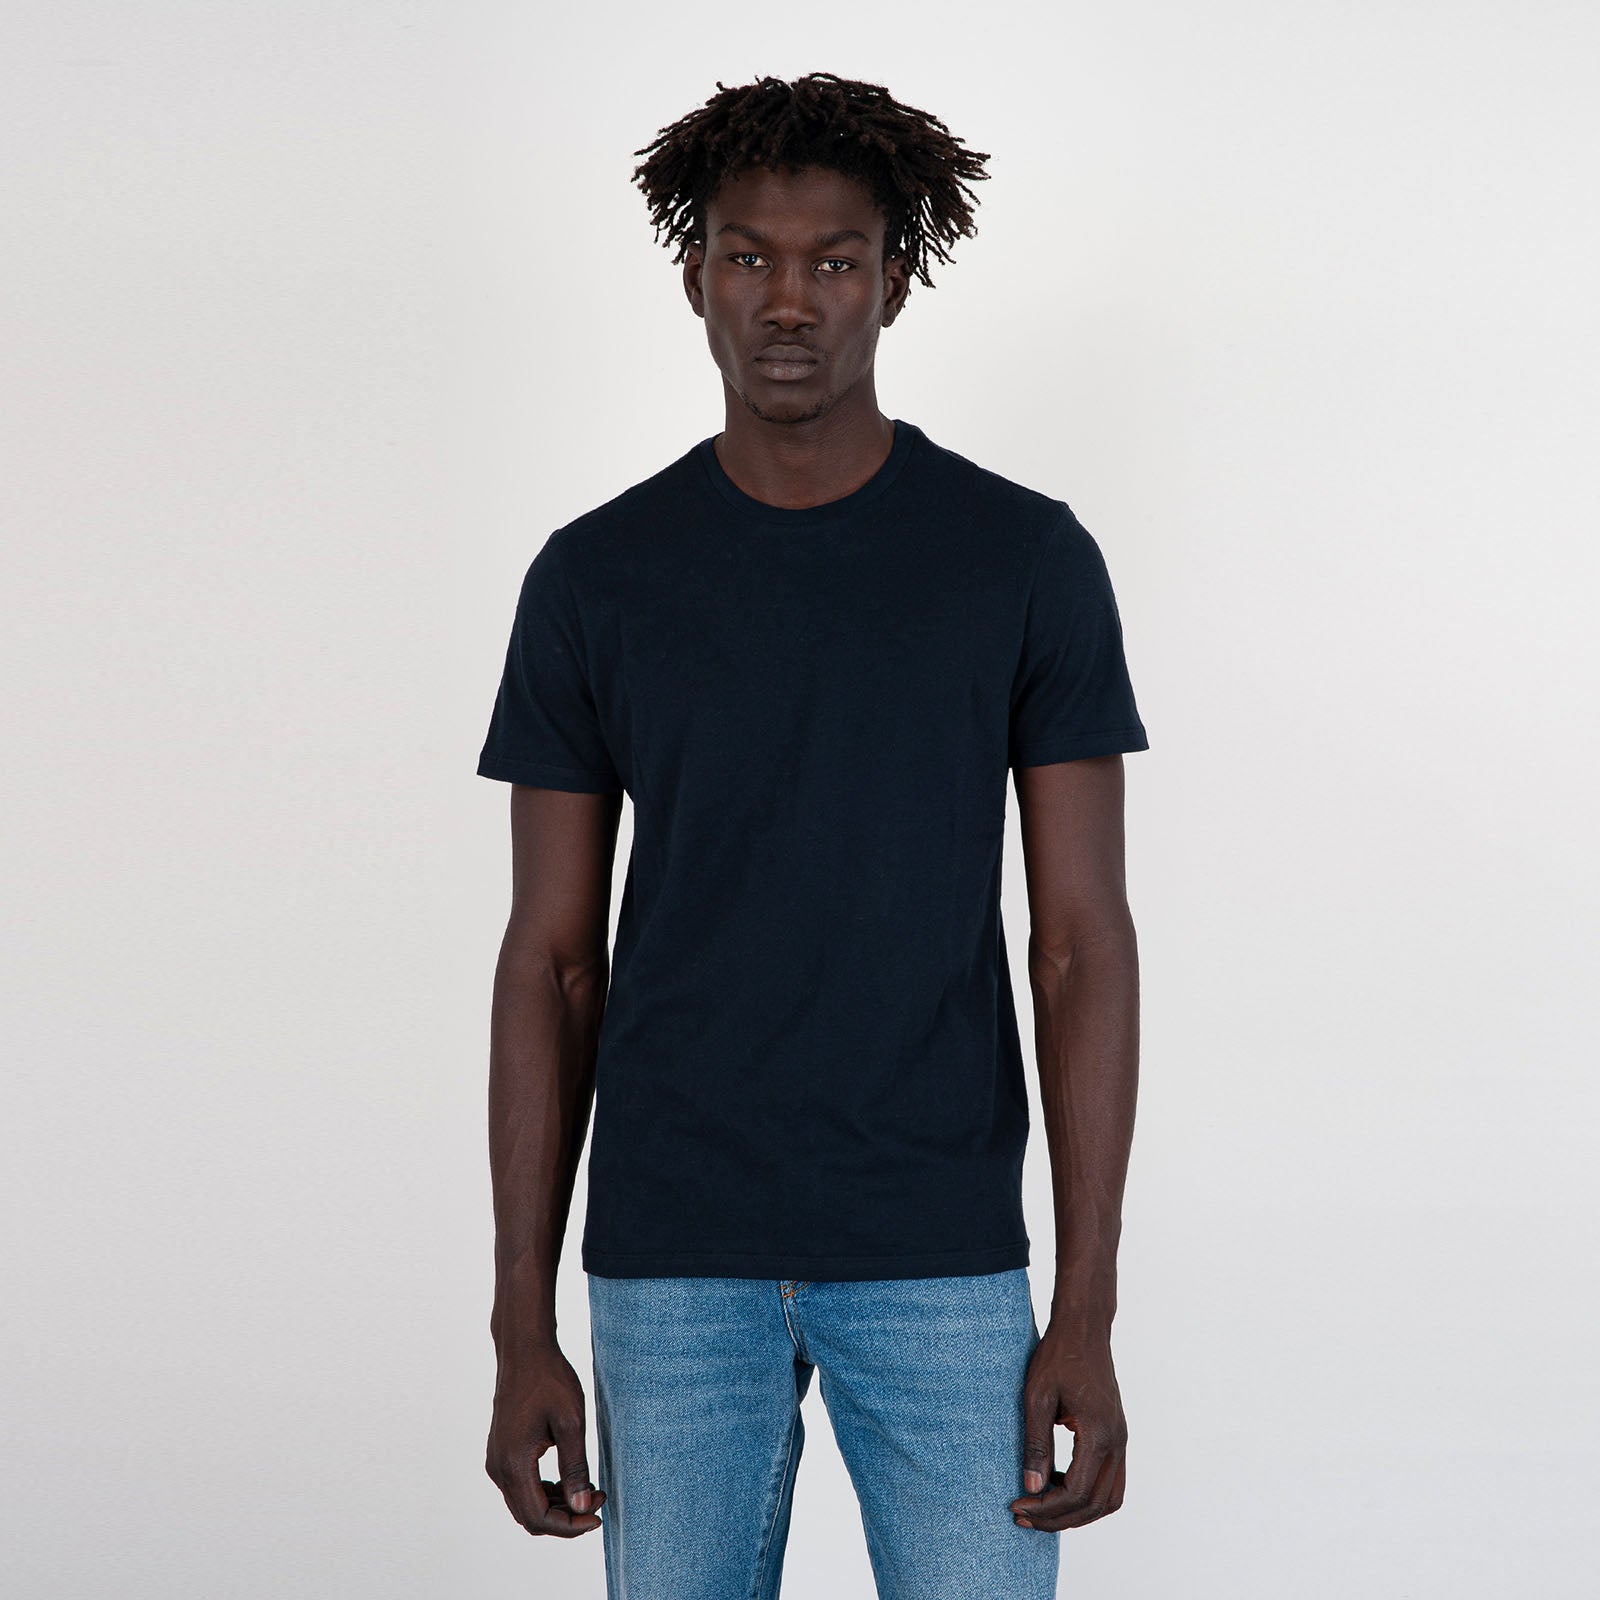 Julien Blue Men T-Shirt - 5